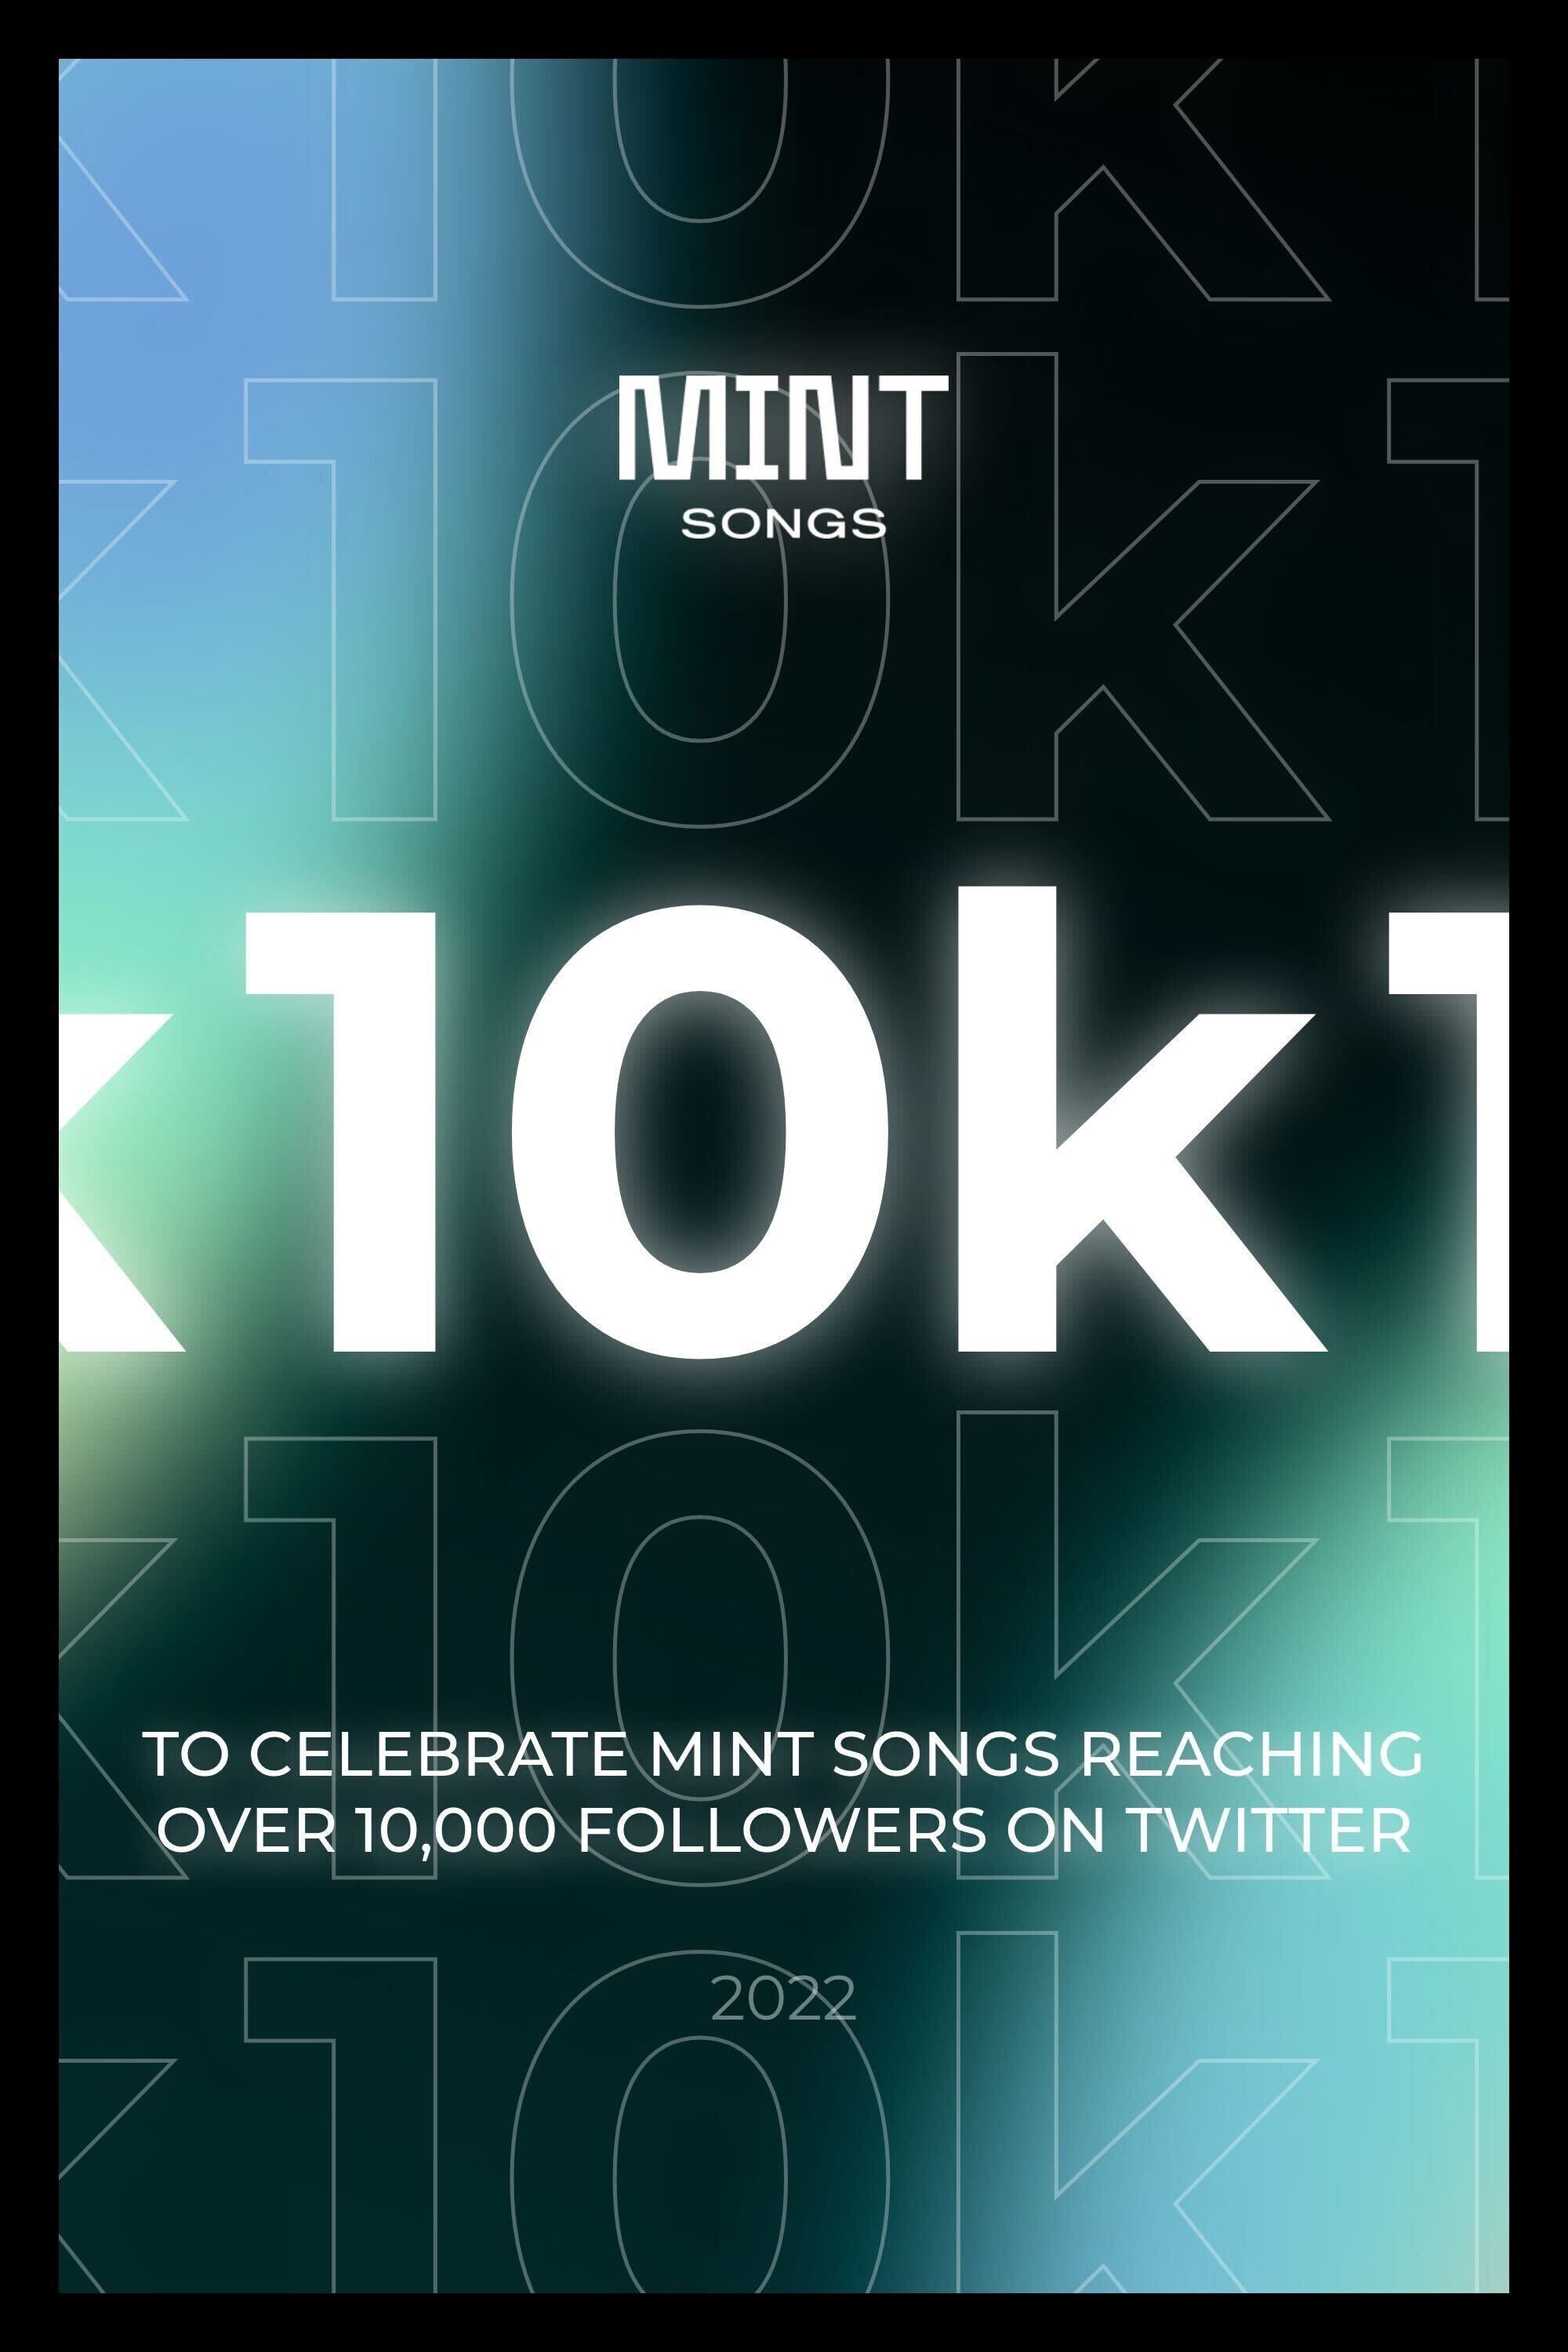 Mint Songs Hits 10K on Twitter